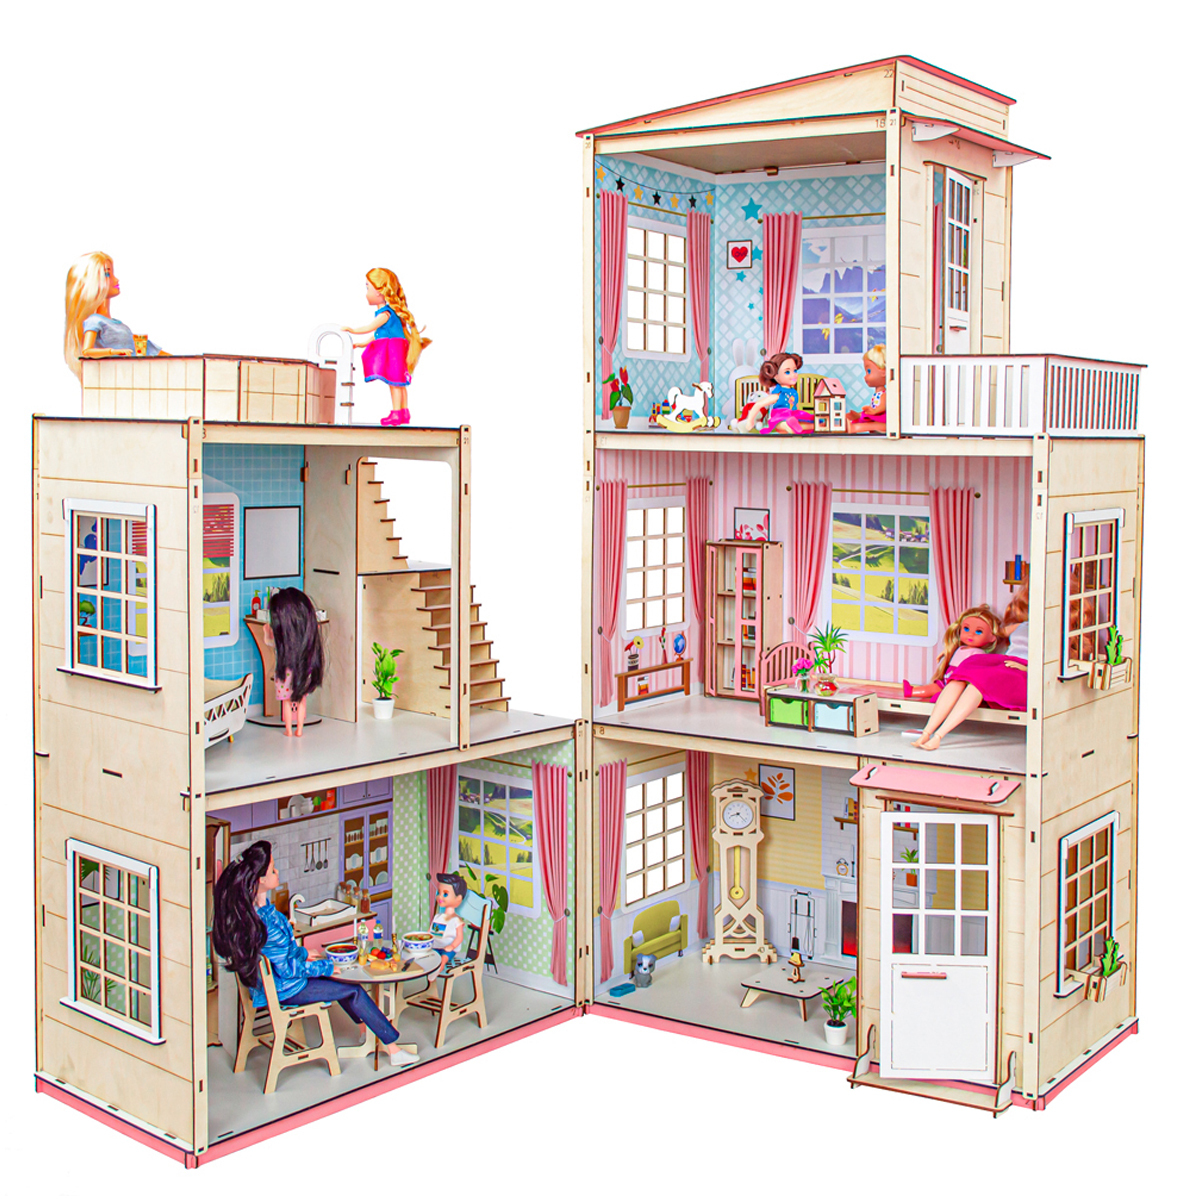 Кукольные домики и мебель для кукол любых размеров - ваша маленькая принцесса будет счастлива!